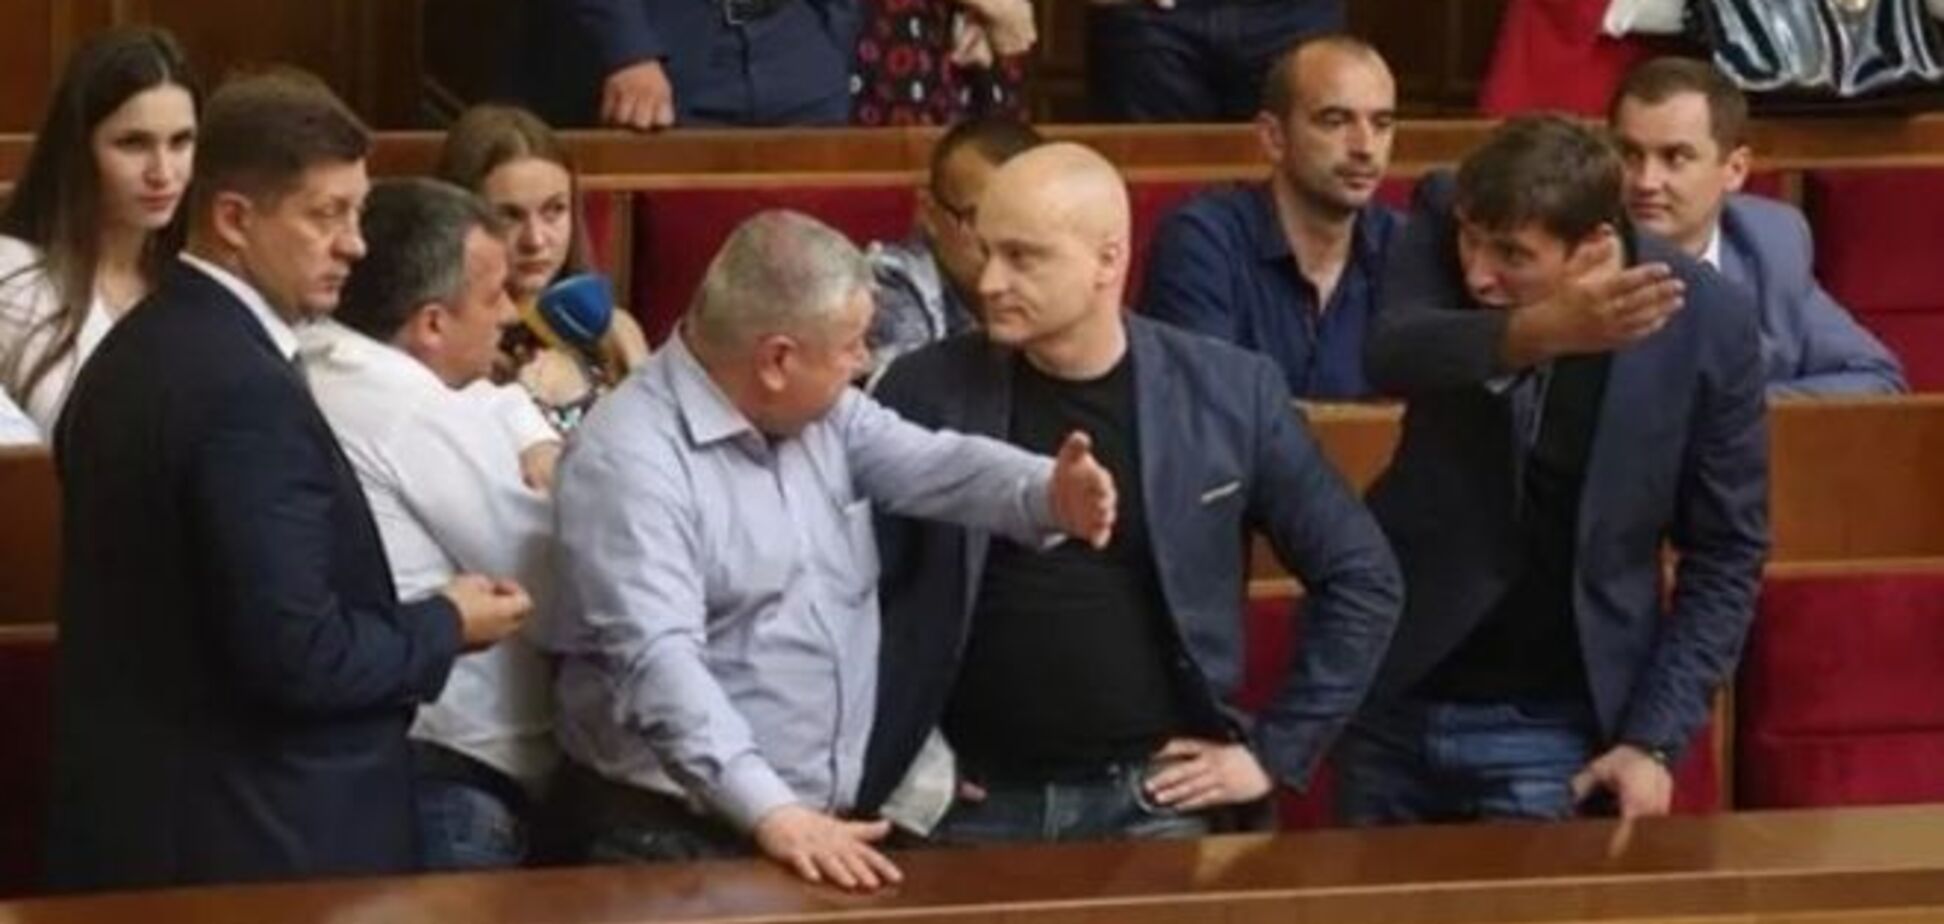 Парасюк пытался саботировать выступление Порошенко в Раде провокационным плакатом